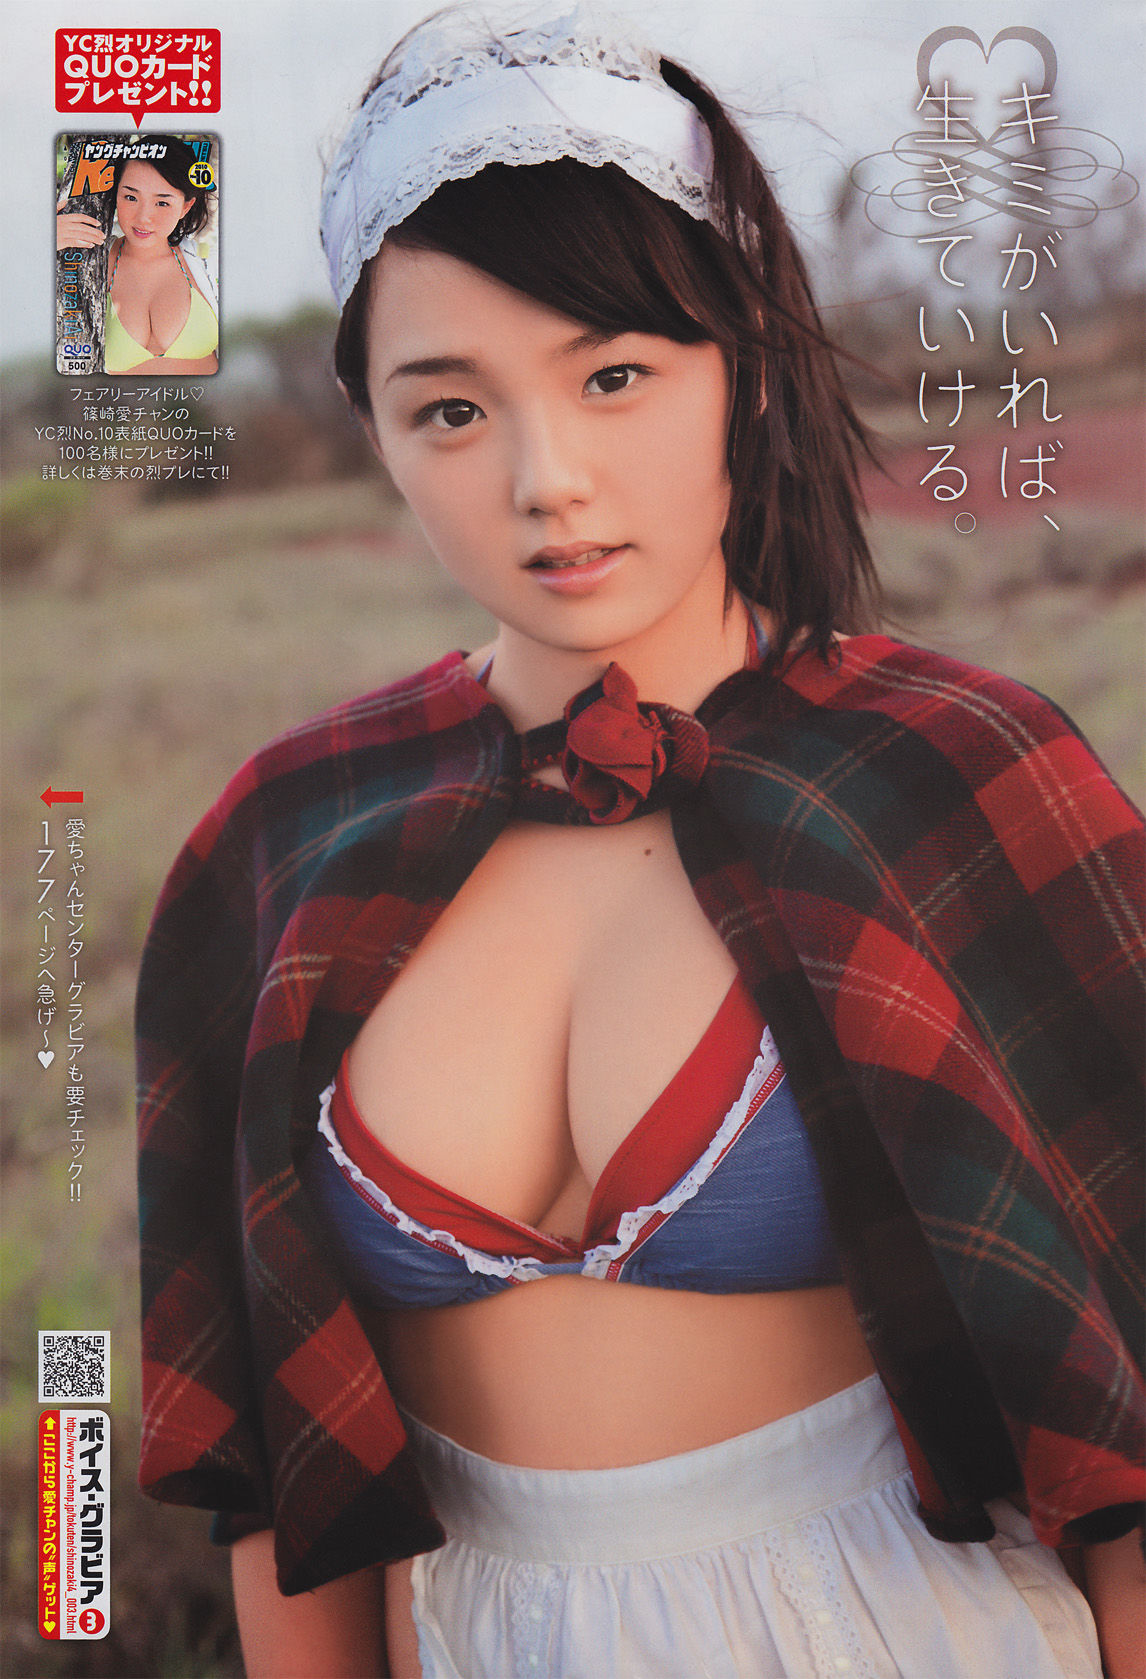 [Young Champion Retsu] Ai Shinozaki 2010 No.10 Photo Magazine Page 7 No.9e434c